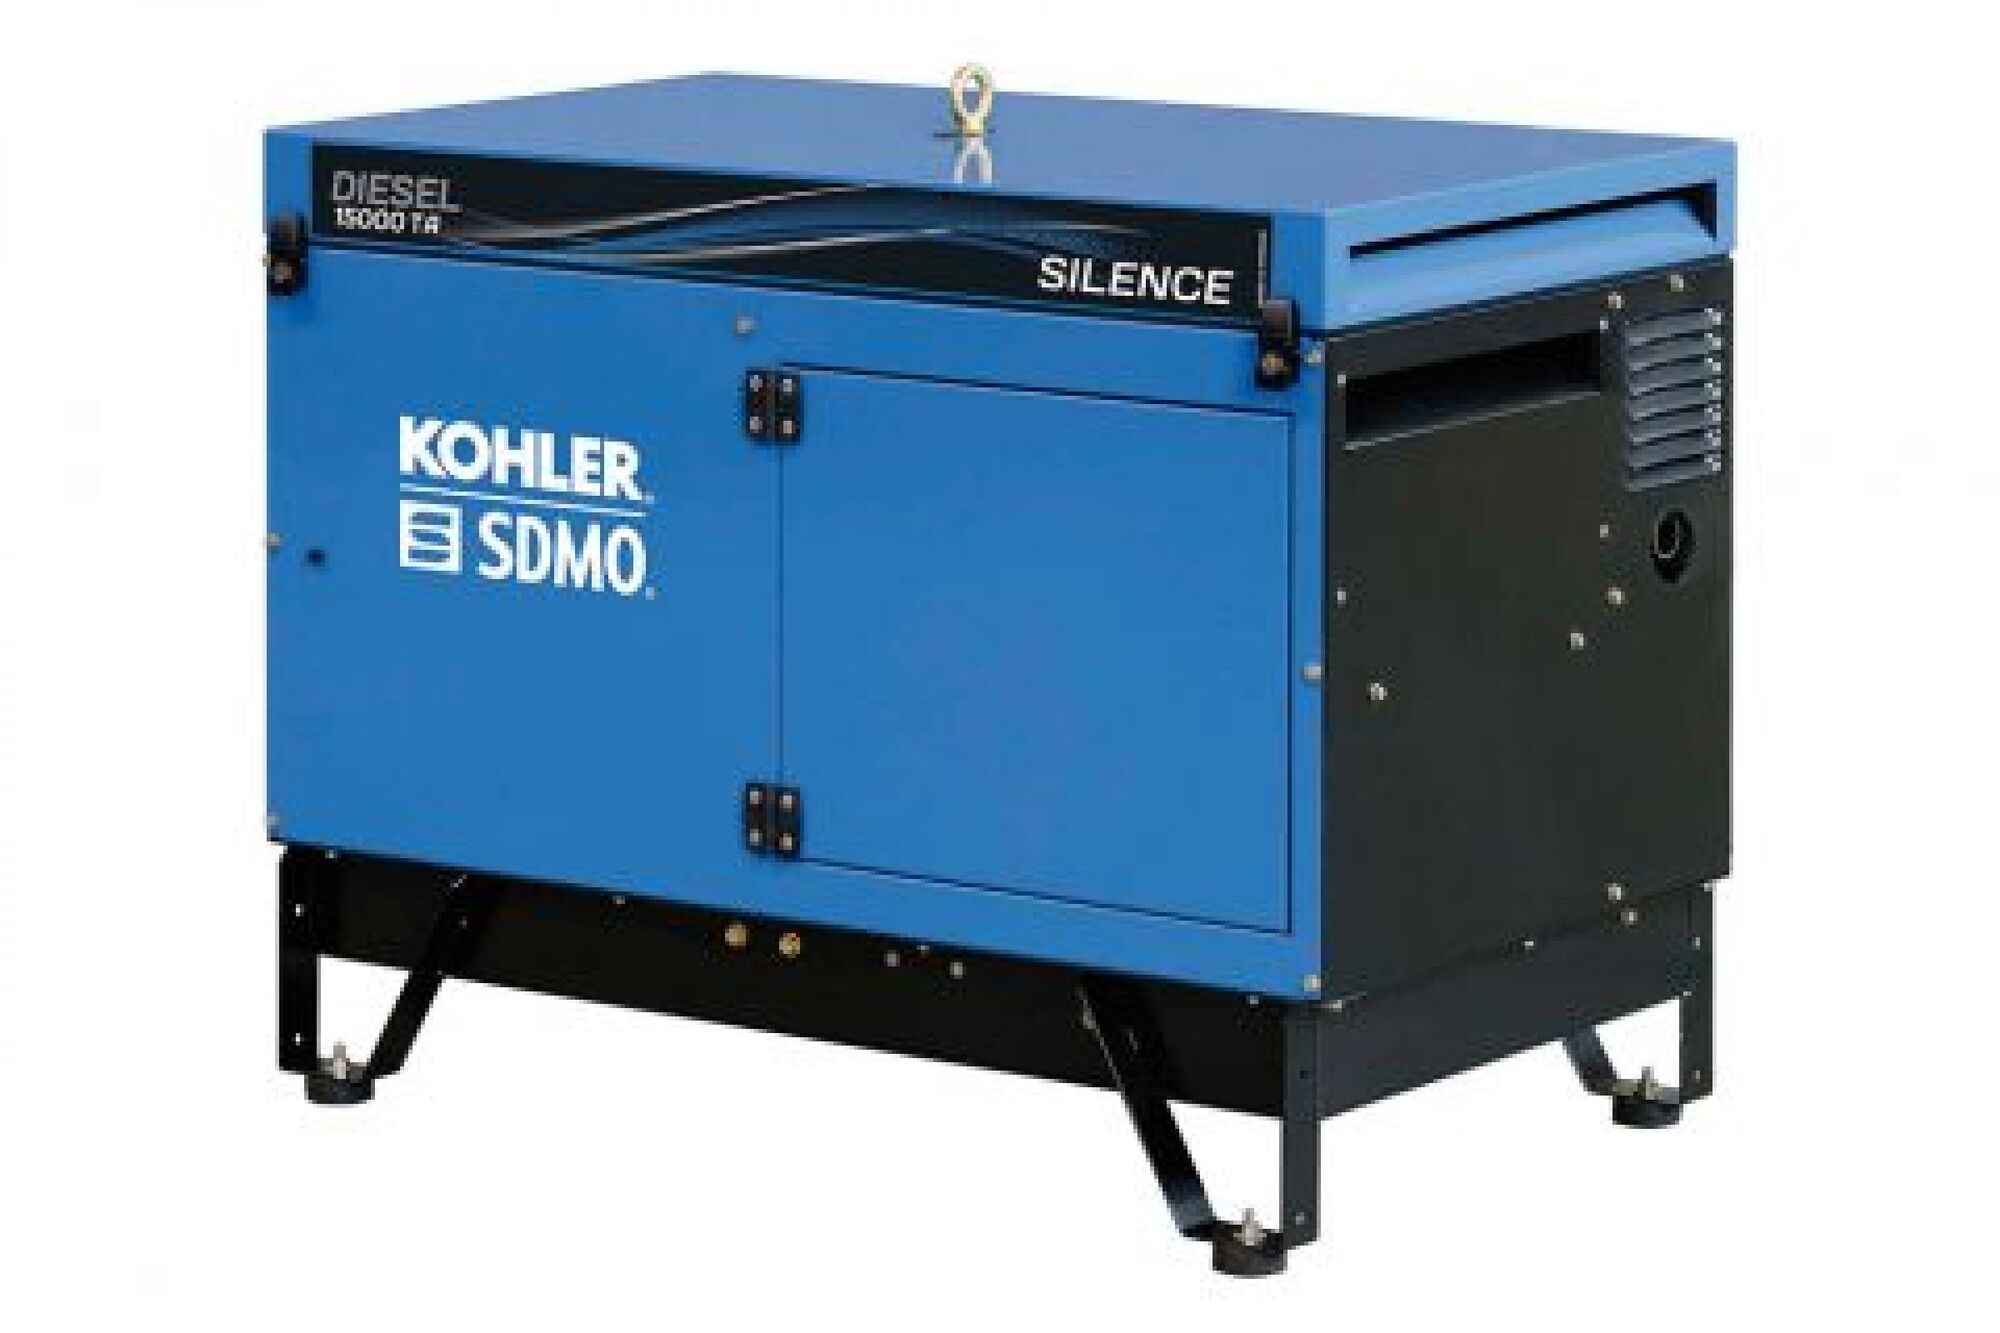 Дизельный генератор KOHLER-SDMO Diesel 15000 TA Silence 10 кВт, 380/220 В 101124280